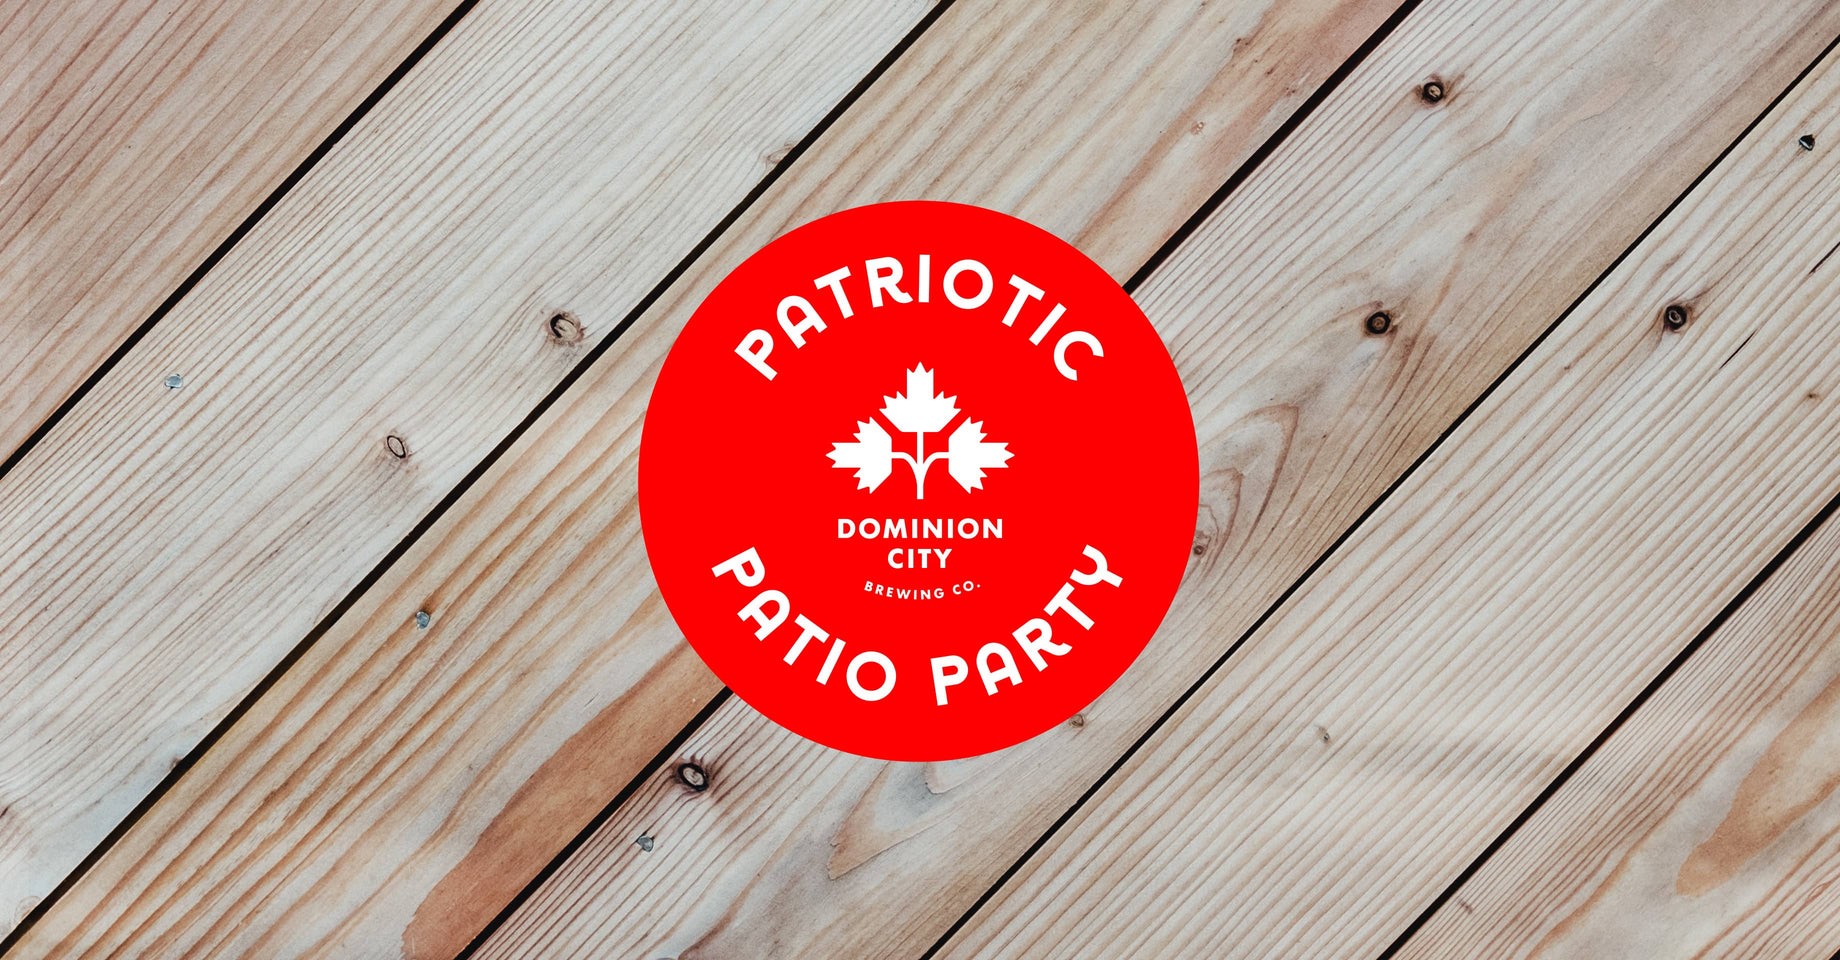 Patriotic Patio Party!